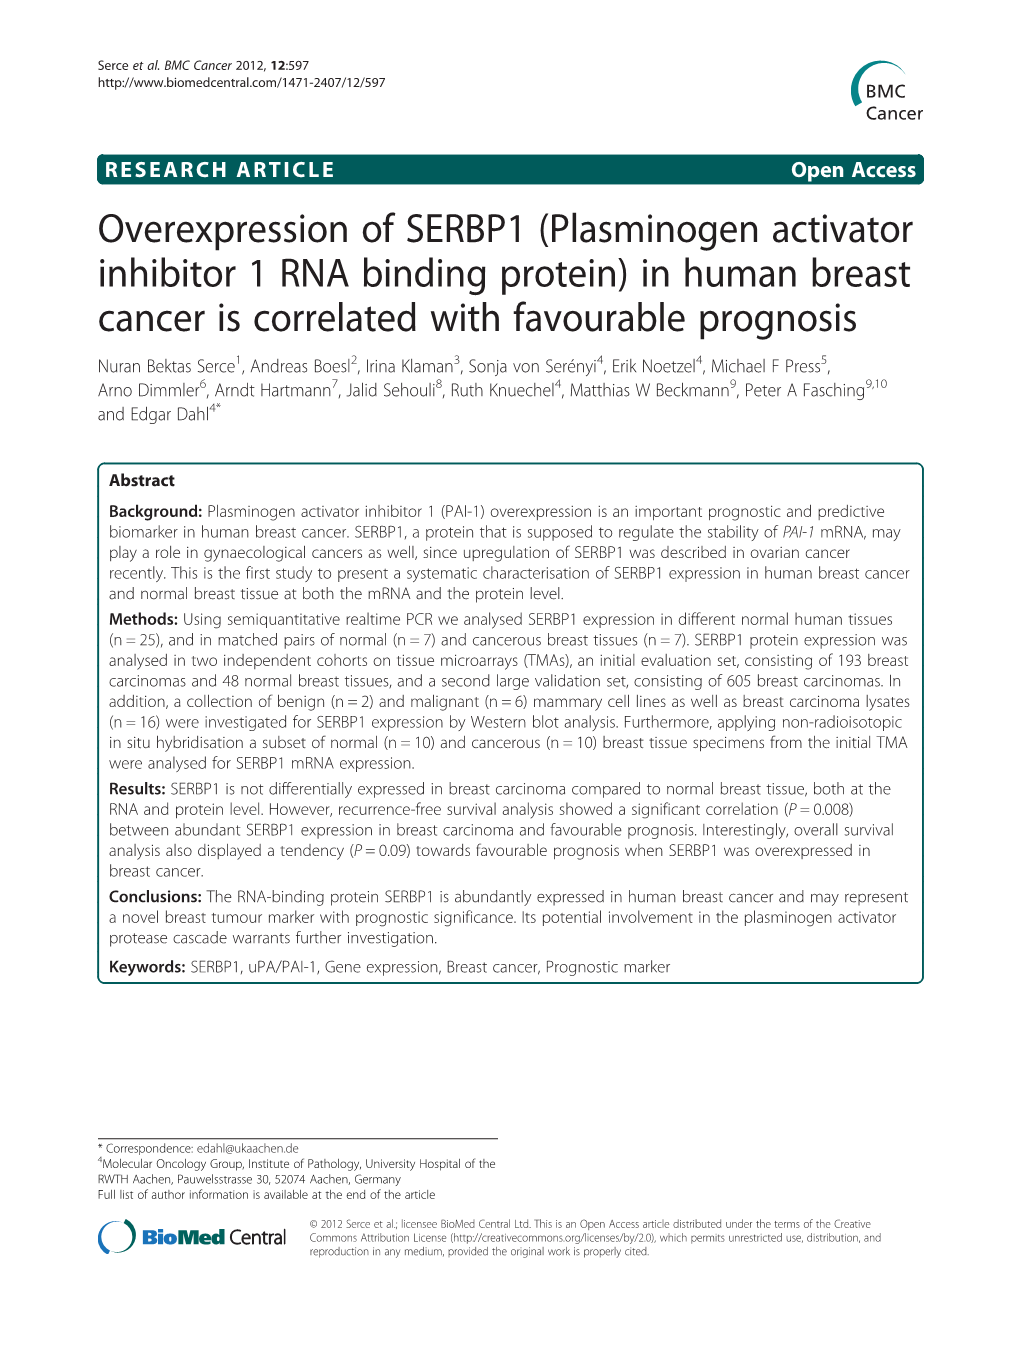 Overexpression of SERBP1 (Plasminogen Activator Inhibitor 1